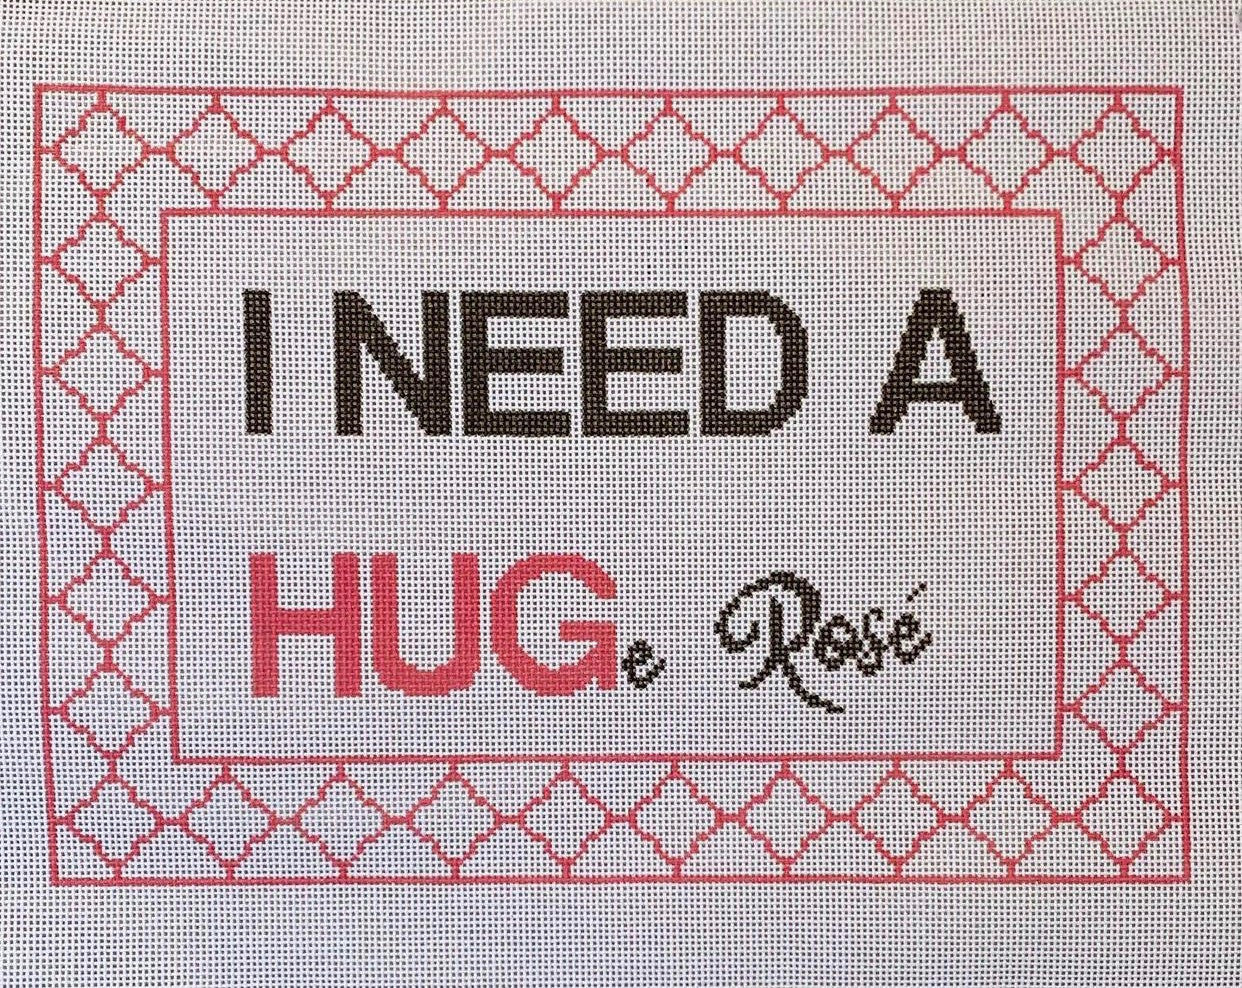 SG Designs I Need a HUGe Rose